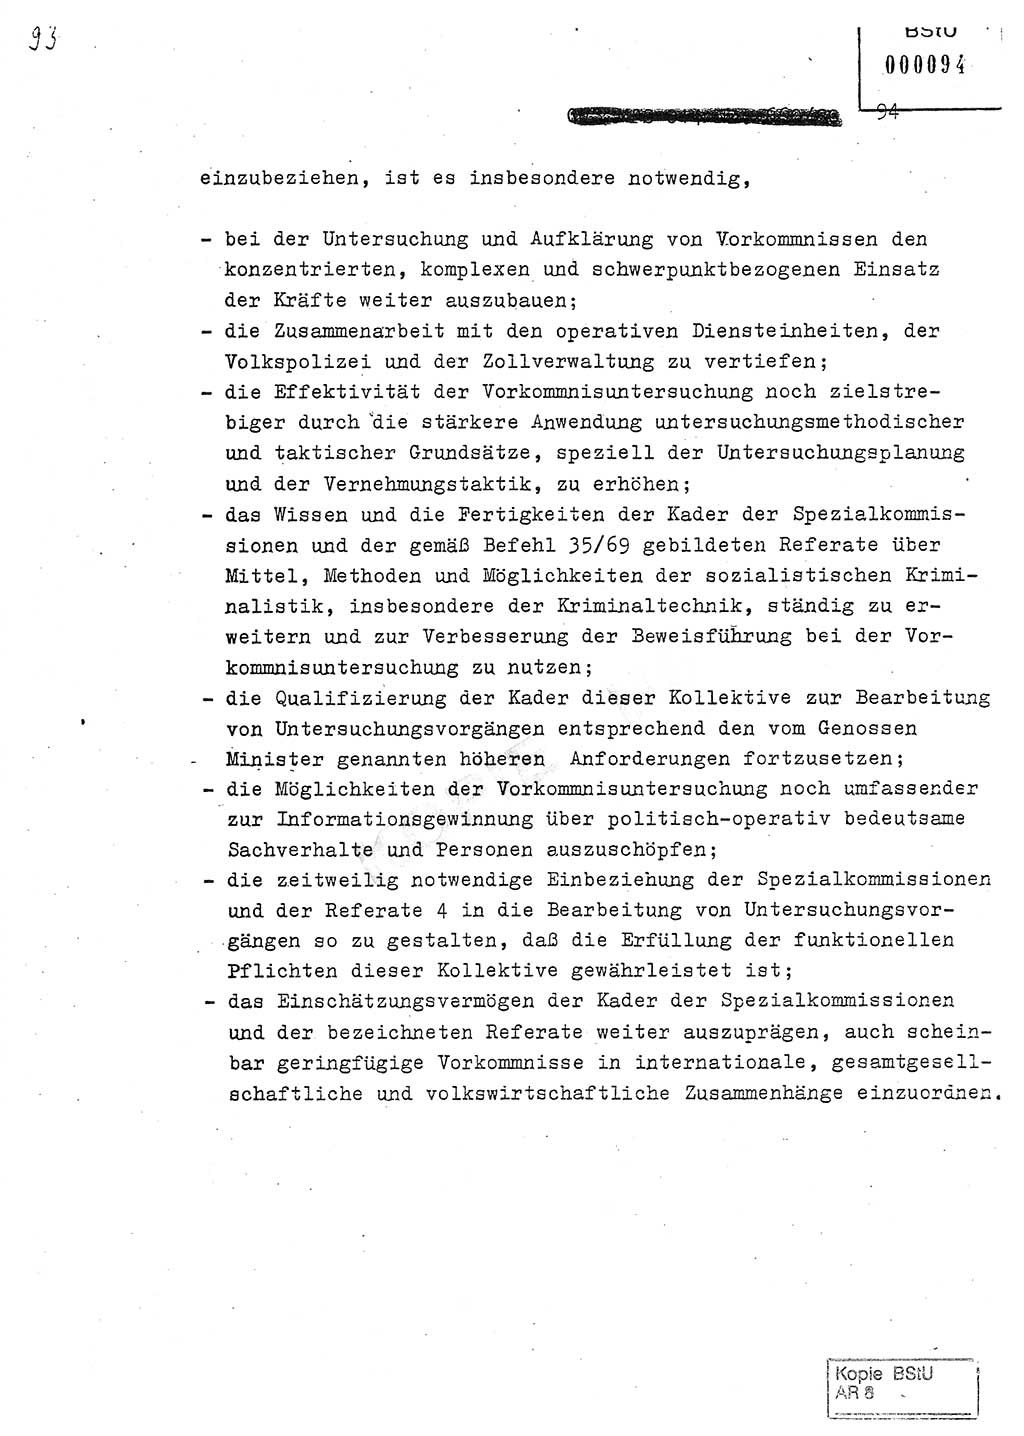 Jahresbericht der Hauptabteilung (HA) Ⅸ 1980, Analyse über die Entwicklung und die Wirksamkeit der politisch-operativen Arbeit der Linie Ⅸ in der Zeit vom 1. Januar 1980 bis 30. September 1980, Ministerium für Staatssicherheit (MfS) der Deutschen Demokratischen Republik (DDR), Hauptabteilung Ⅸ, Geheime Verschlußsache (GVS) 014-660/80, Berlin 1980, Seite 94 (Anal. MfS DDR HA Ⅸ GVS 014-660/80 1980, S. 94)